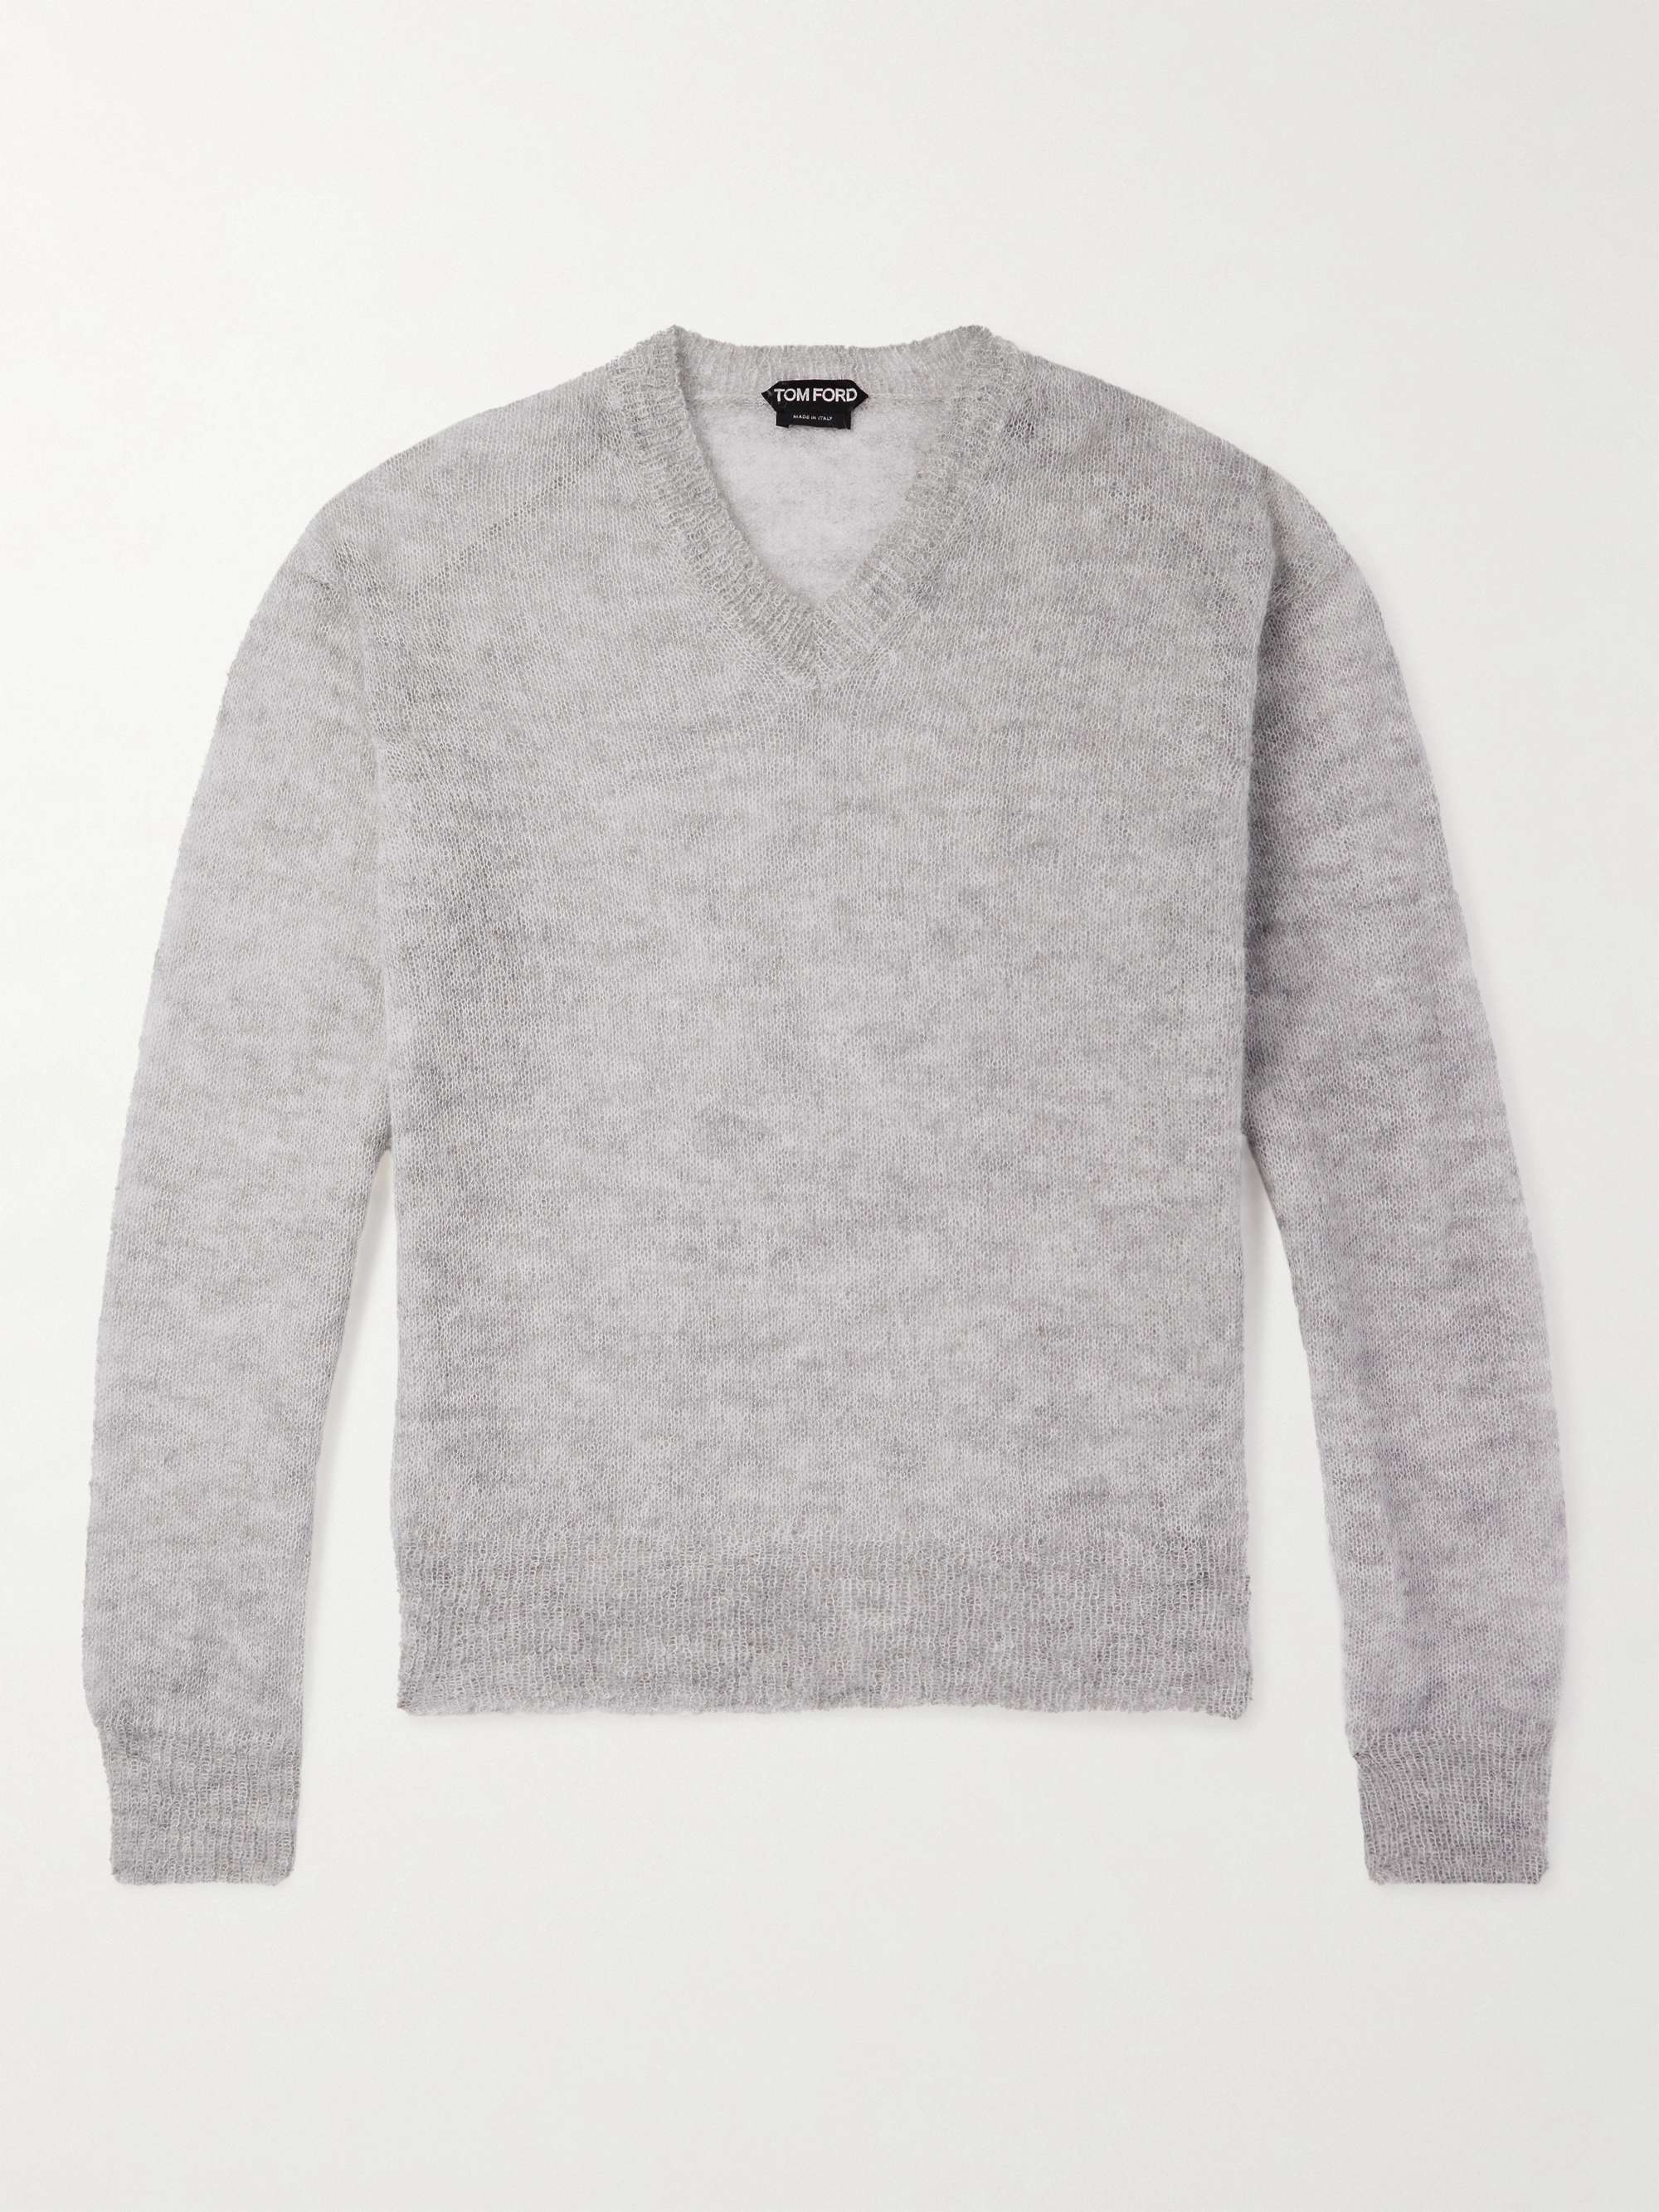 TOM FORD Mohair-Blend Sweater for Men | MR PORTER